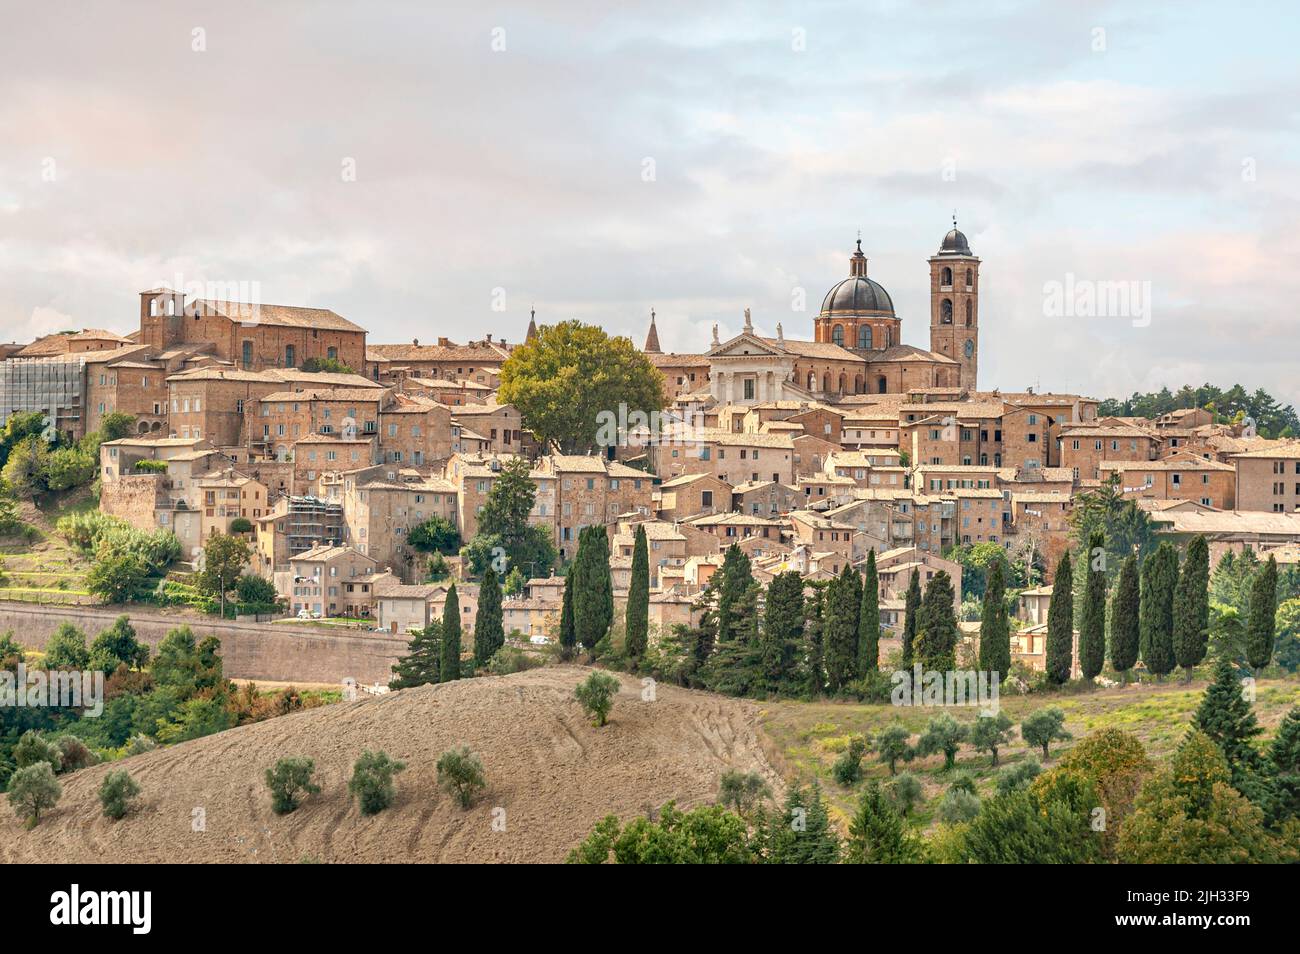 Vue sur la ville d'Urbino, région des Marches, Italie Banque D'Images